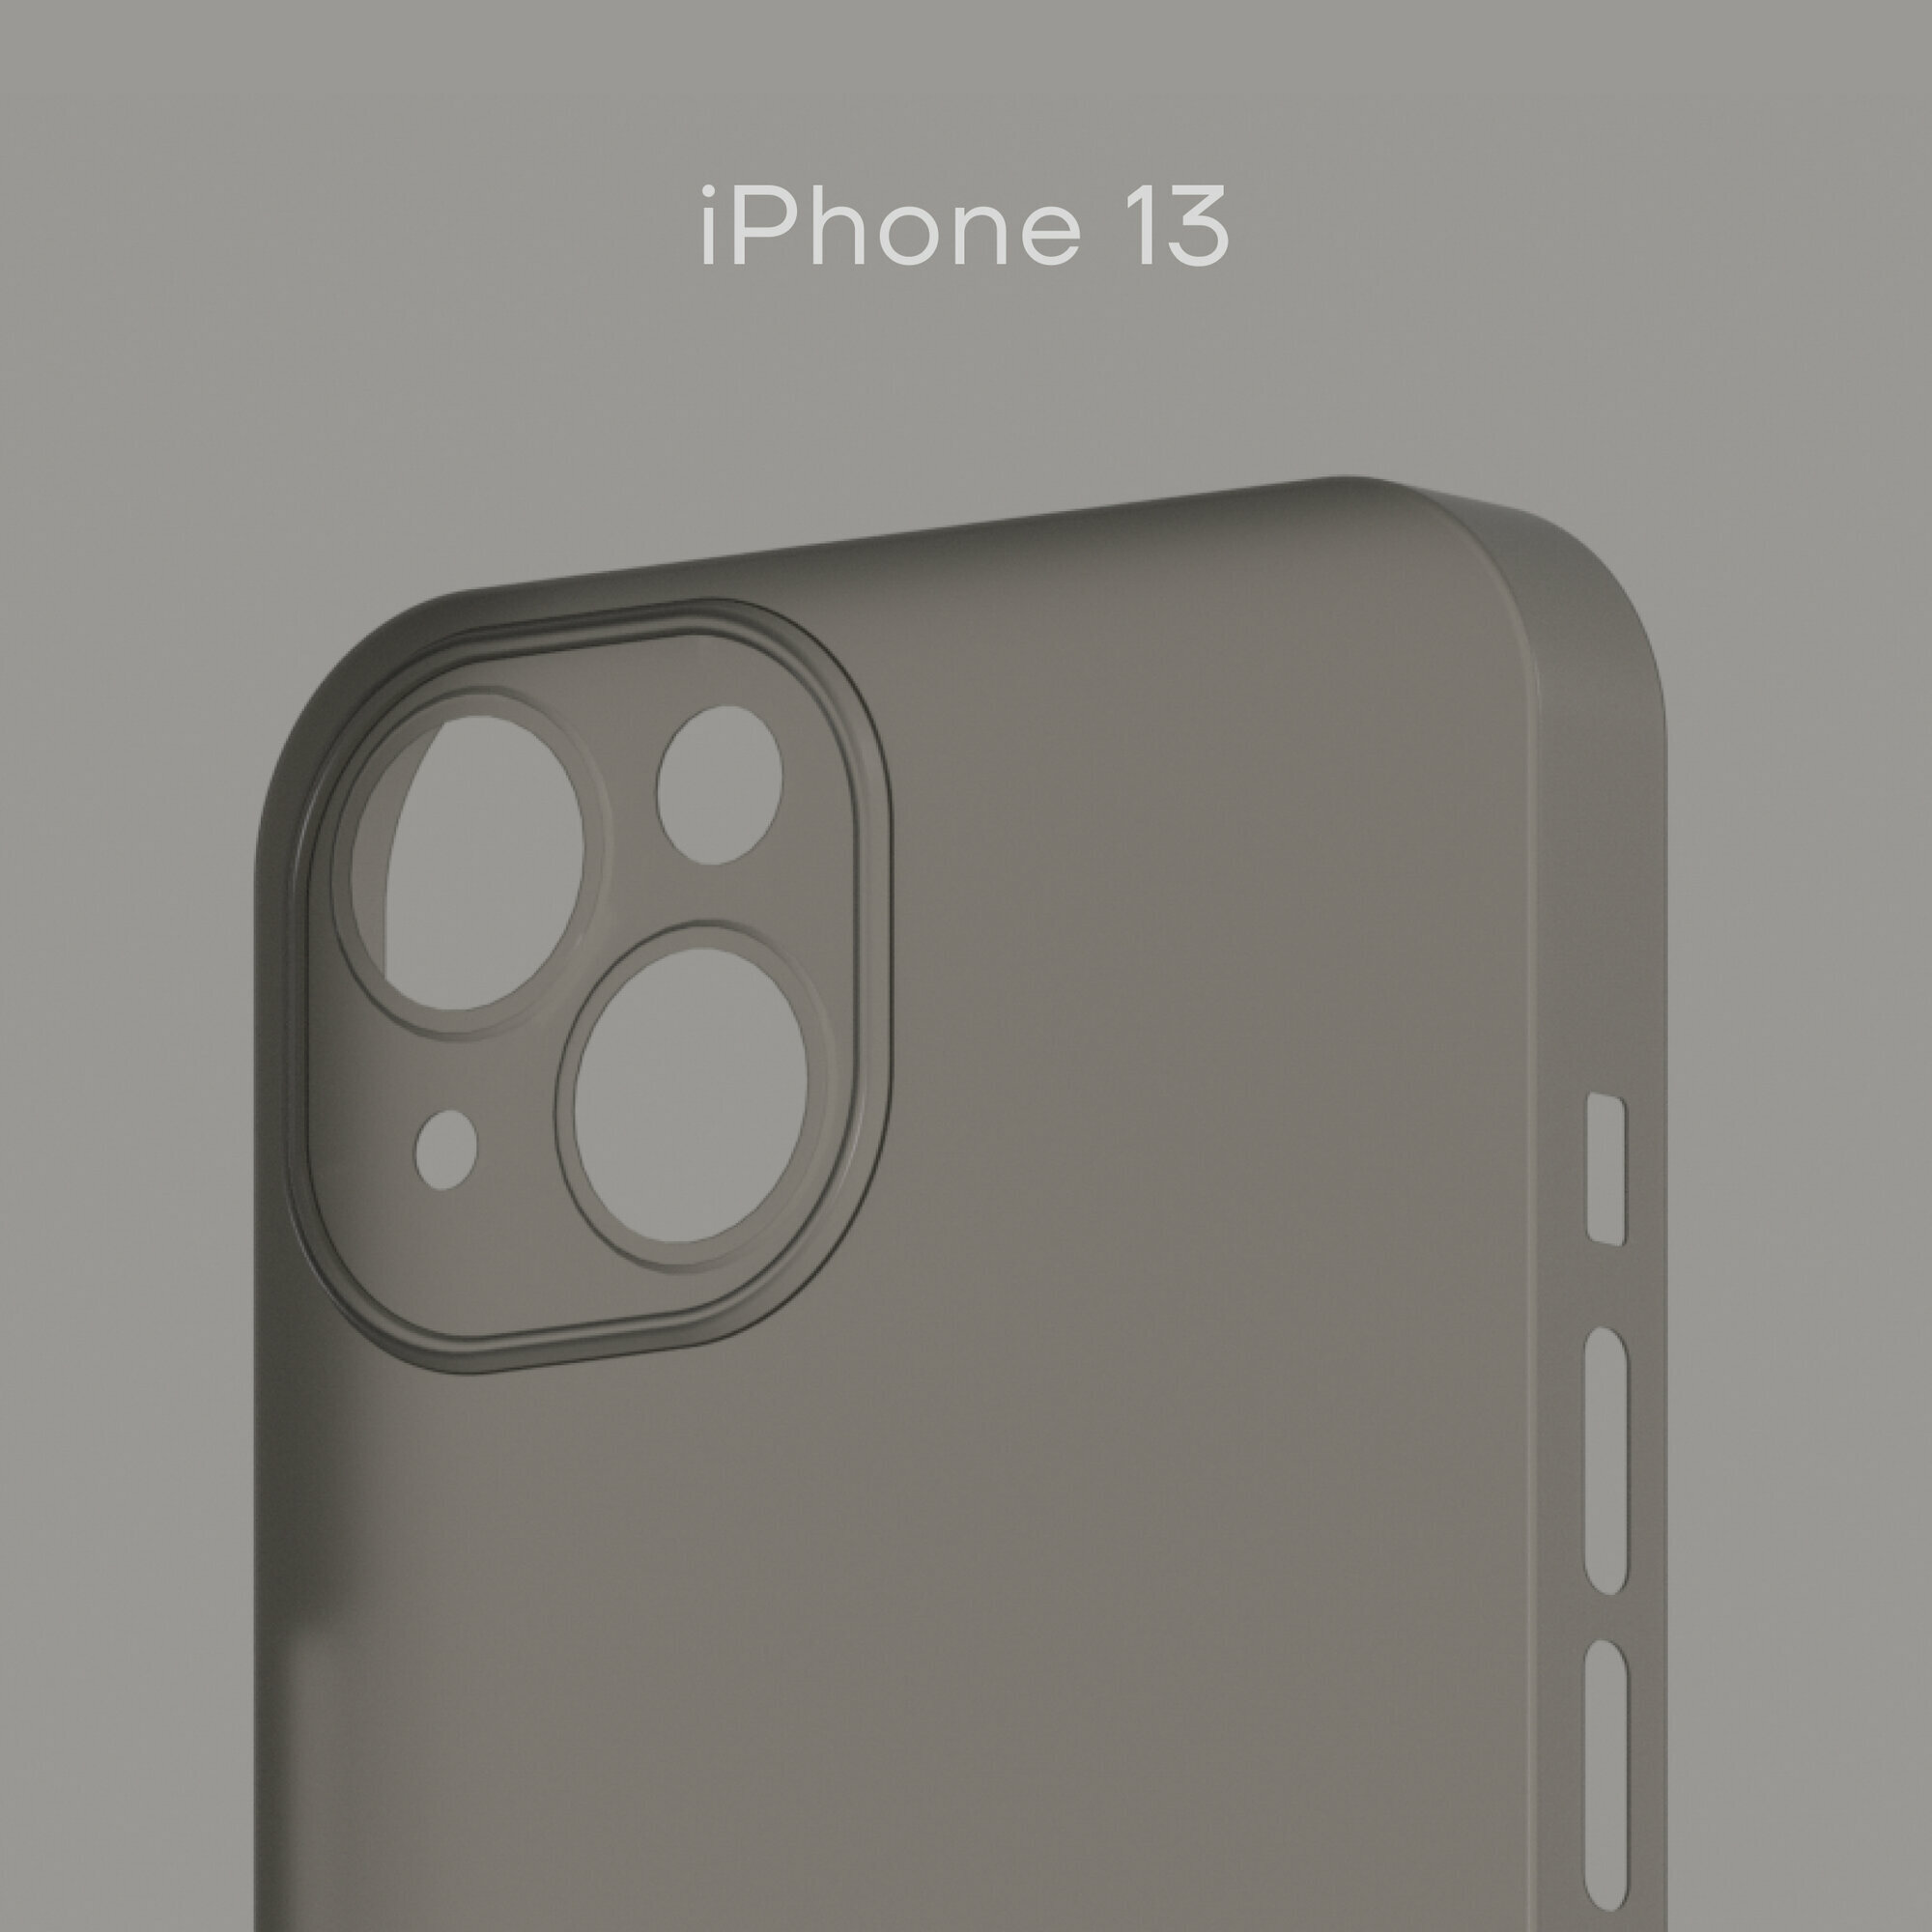 Тонкий чехол Уголок Air Case для iPhone 13 / Айфон 13 толщиной 0,3 мм, прозрачный, матовый, пластиковый